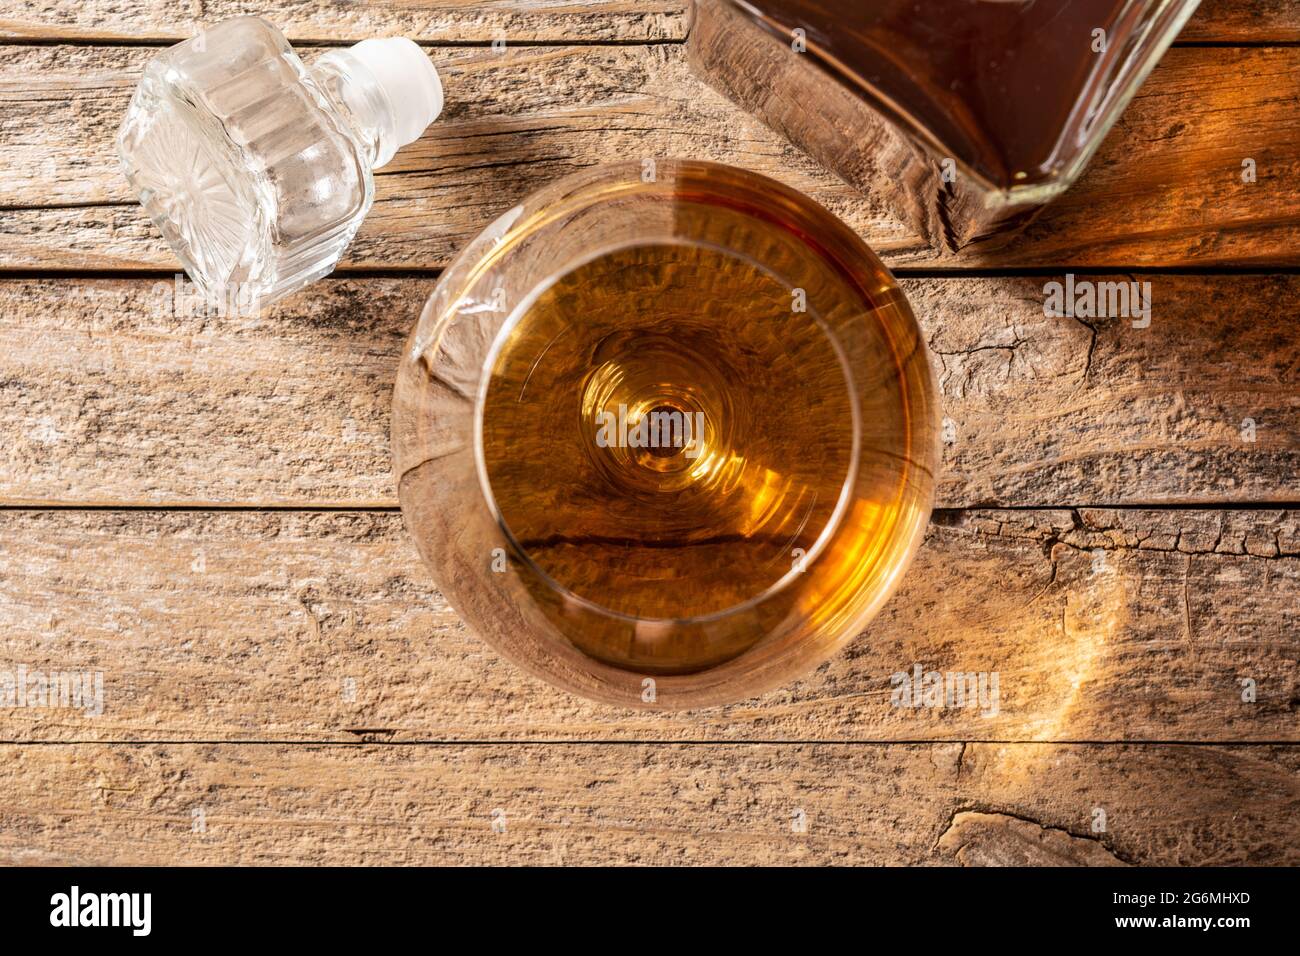 Boisson au Cognac sur une table en bois Banque D'Images